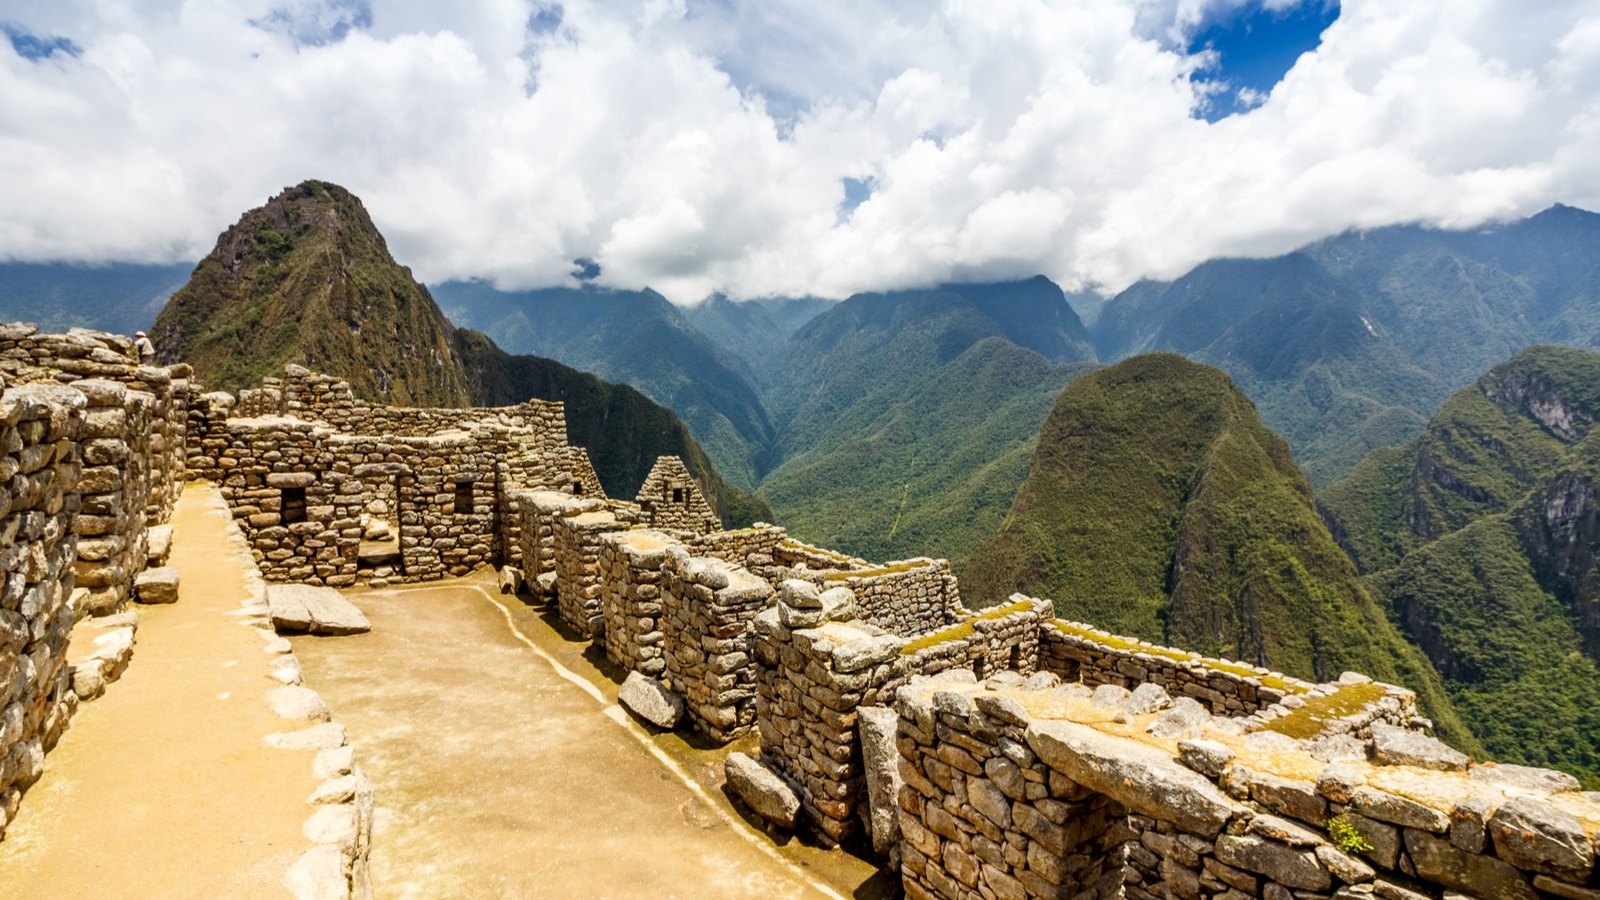 View of the Incan citadel Machu Picchu - Cuzco, Peru